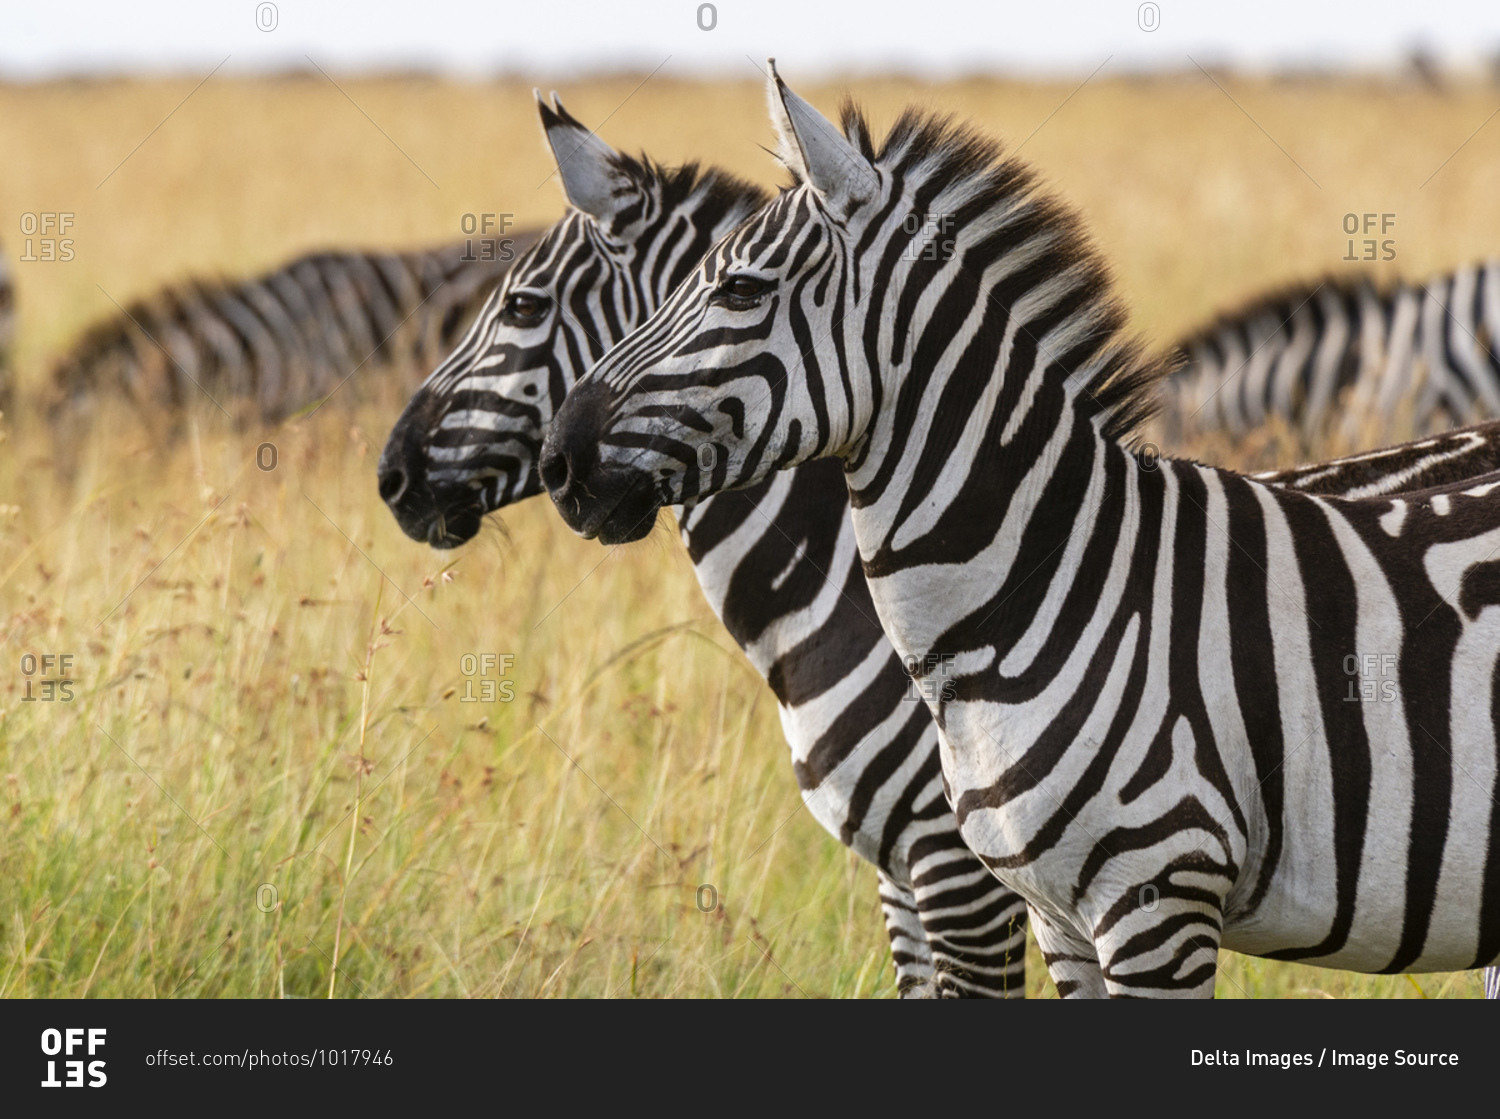 Plains zebras (Equus quagga), Masai Mara National Reserve, Kenya